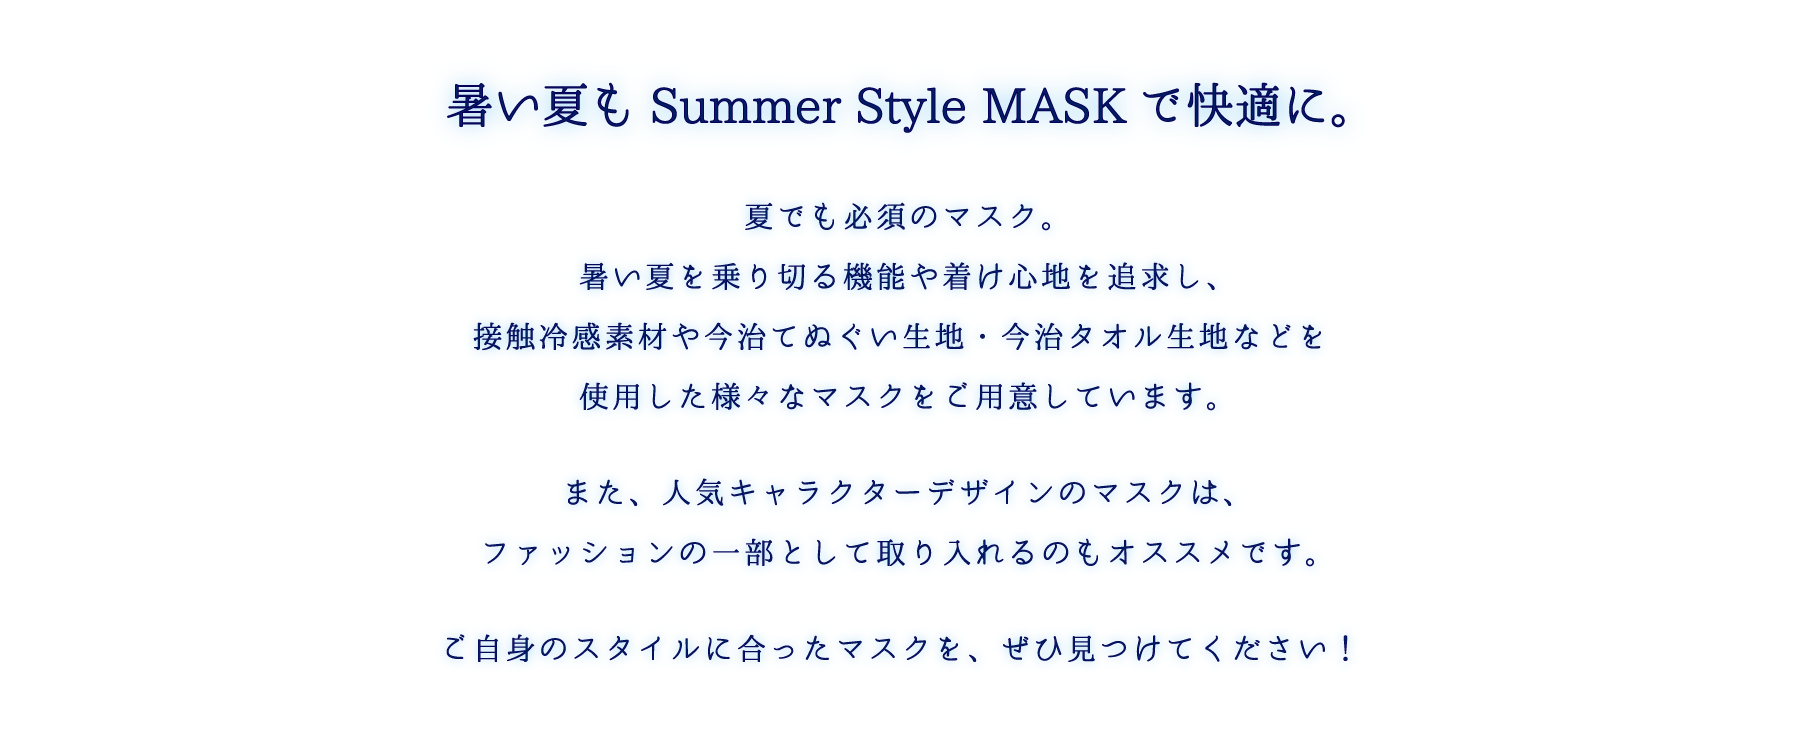 暑い夏もサマースタイルマスクで快適に。